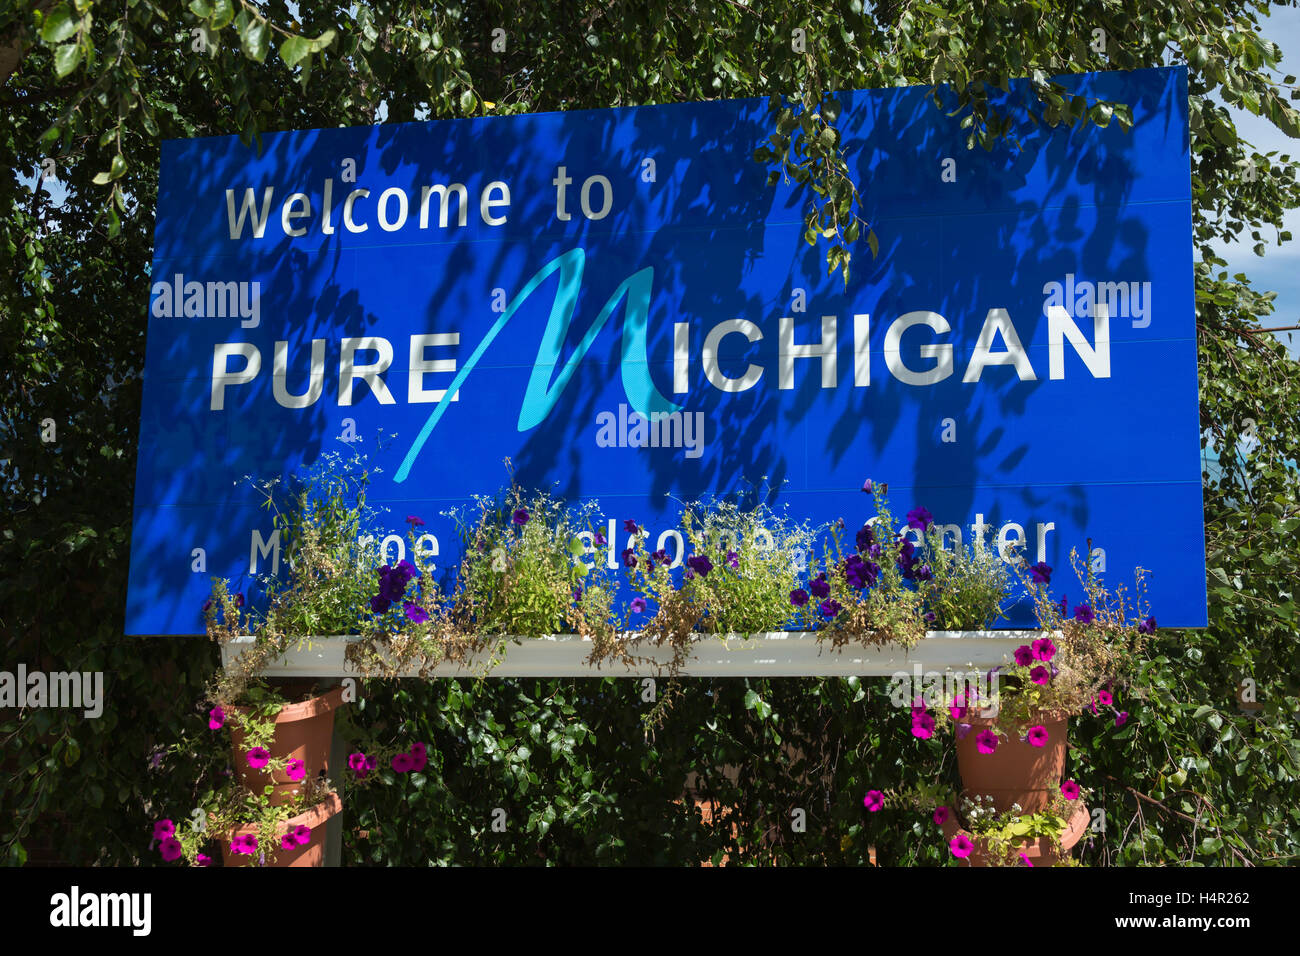 Bienvenido a PURE MICHIGAN signo (©CORP DESARROLLO ECONÓMICO DE MICHIGAN 2016) parada de descanso interestatal de Michigan, EE.UU. Foto de stock